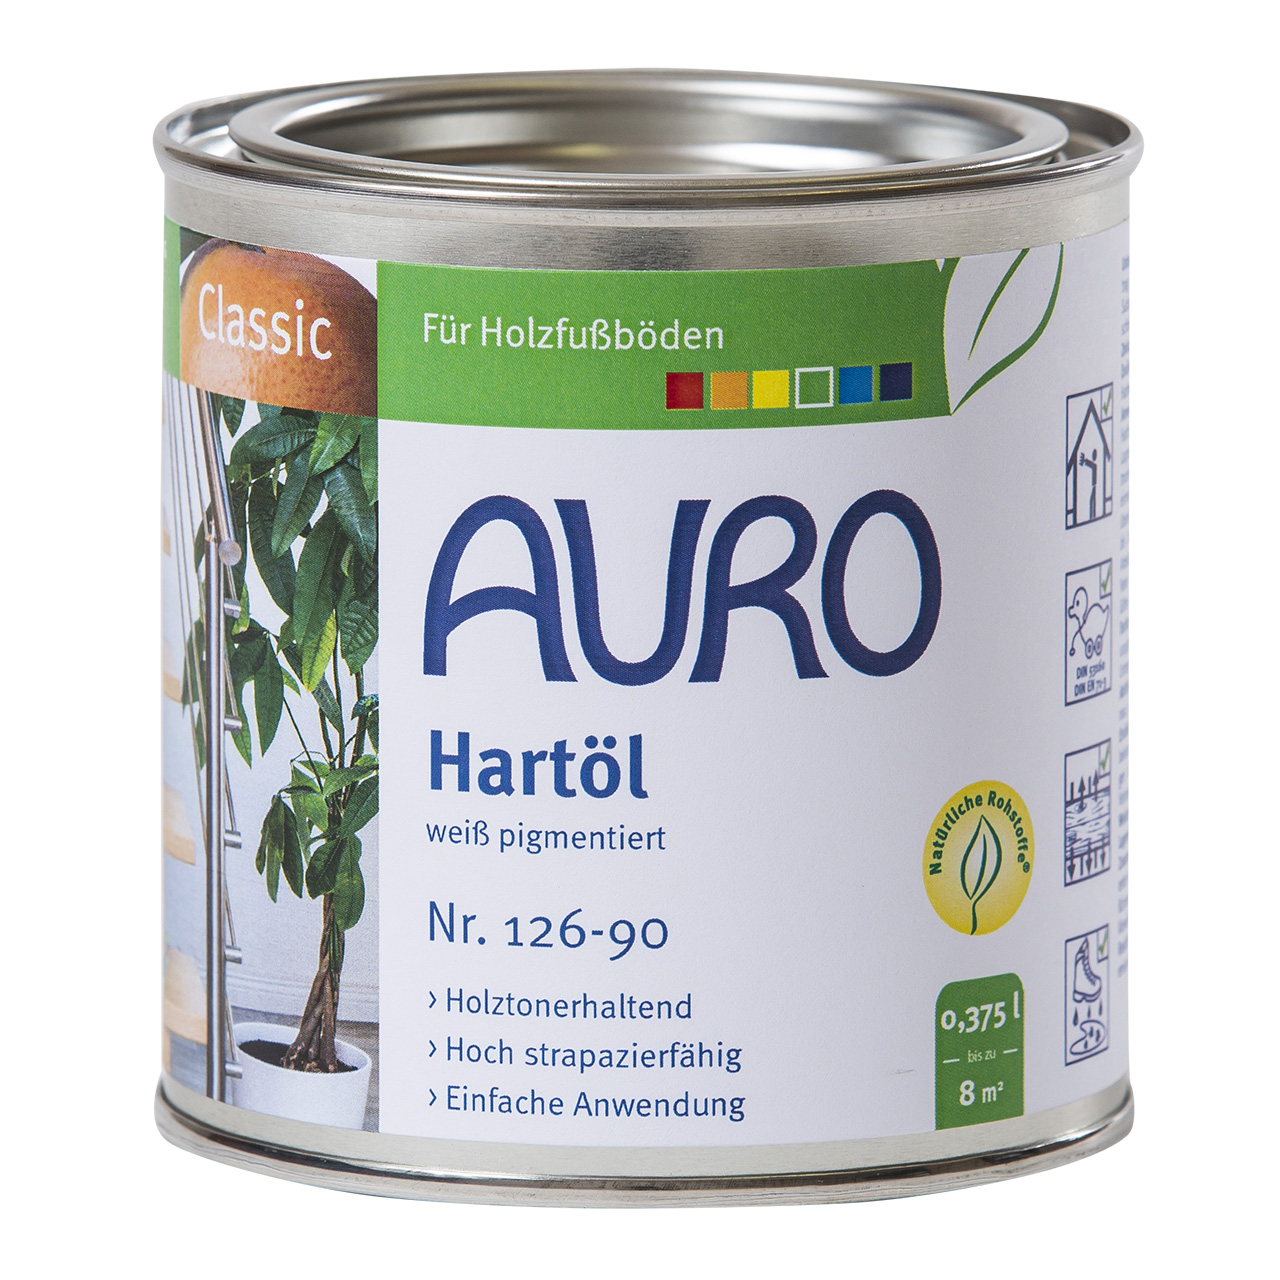 Auro Hartöl Nr. 126, 375ml